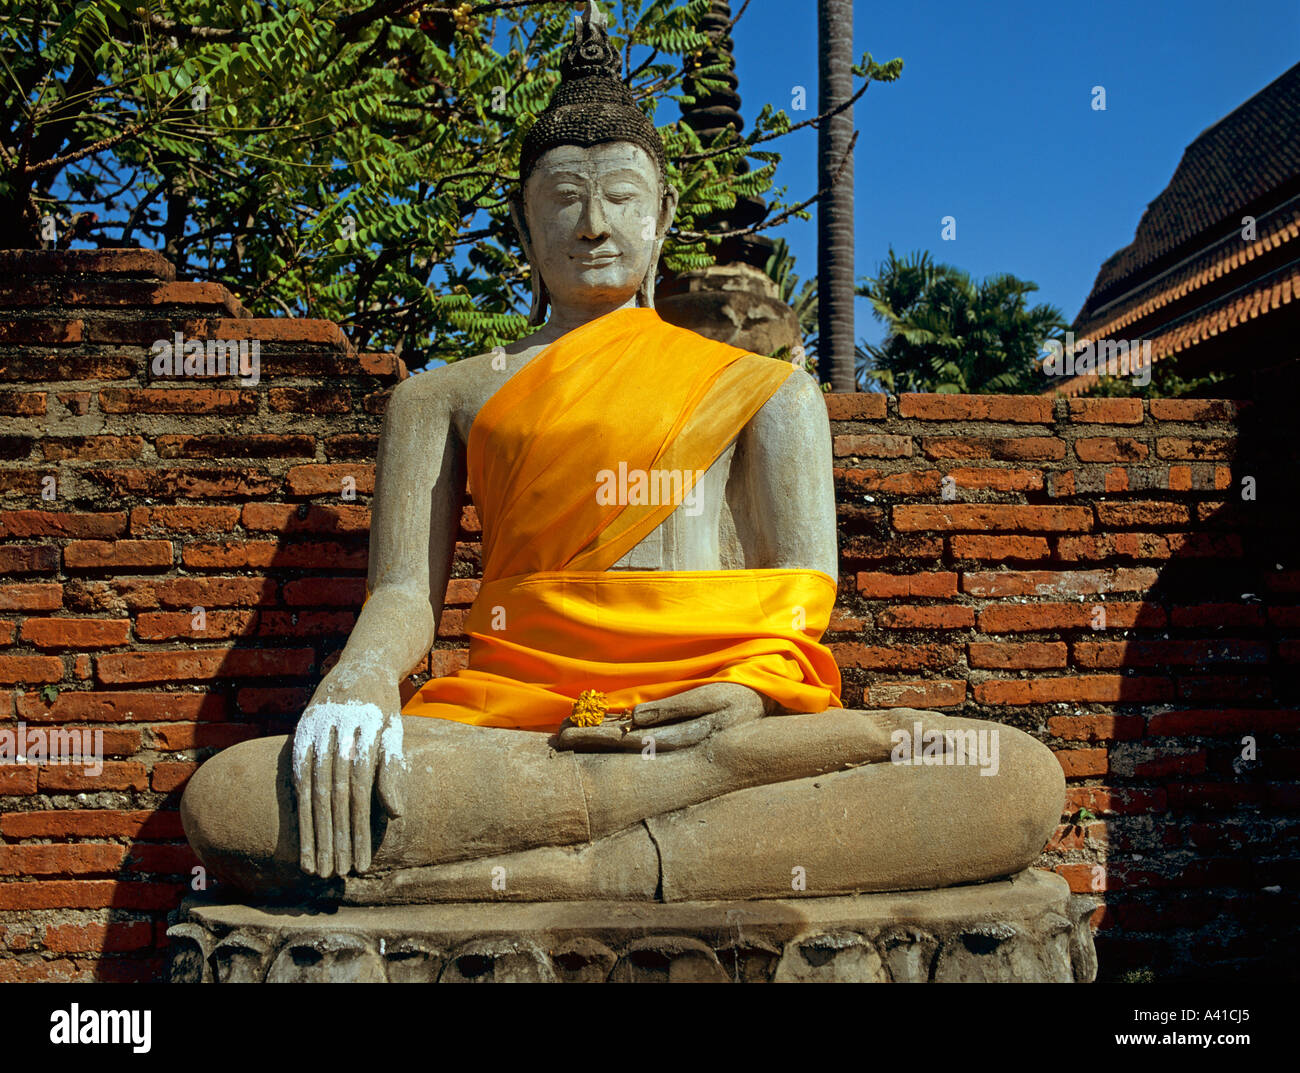 Bouddha assis avec robe safran Wat Yai Chai Mongkhon ville antique d'Ayuthaya Thaïlande Asie du sud-est Banque D'Images